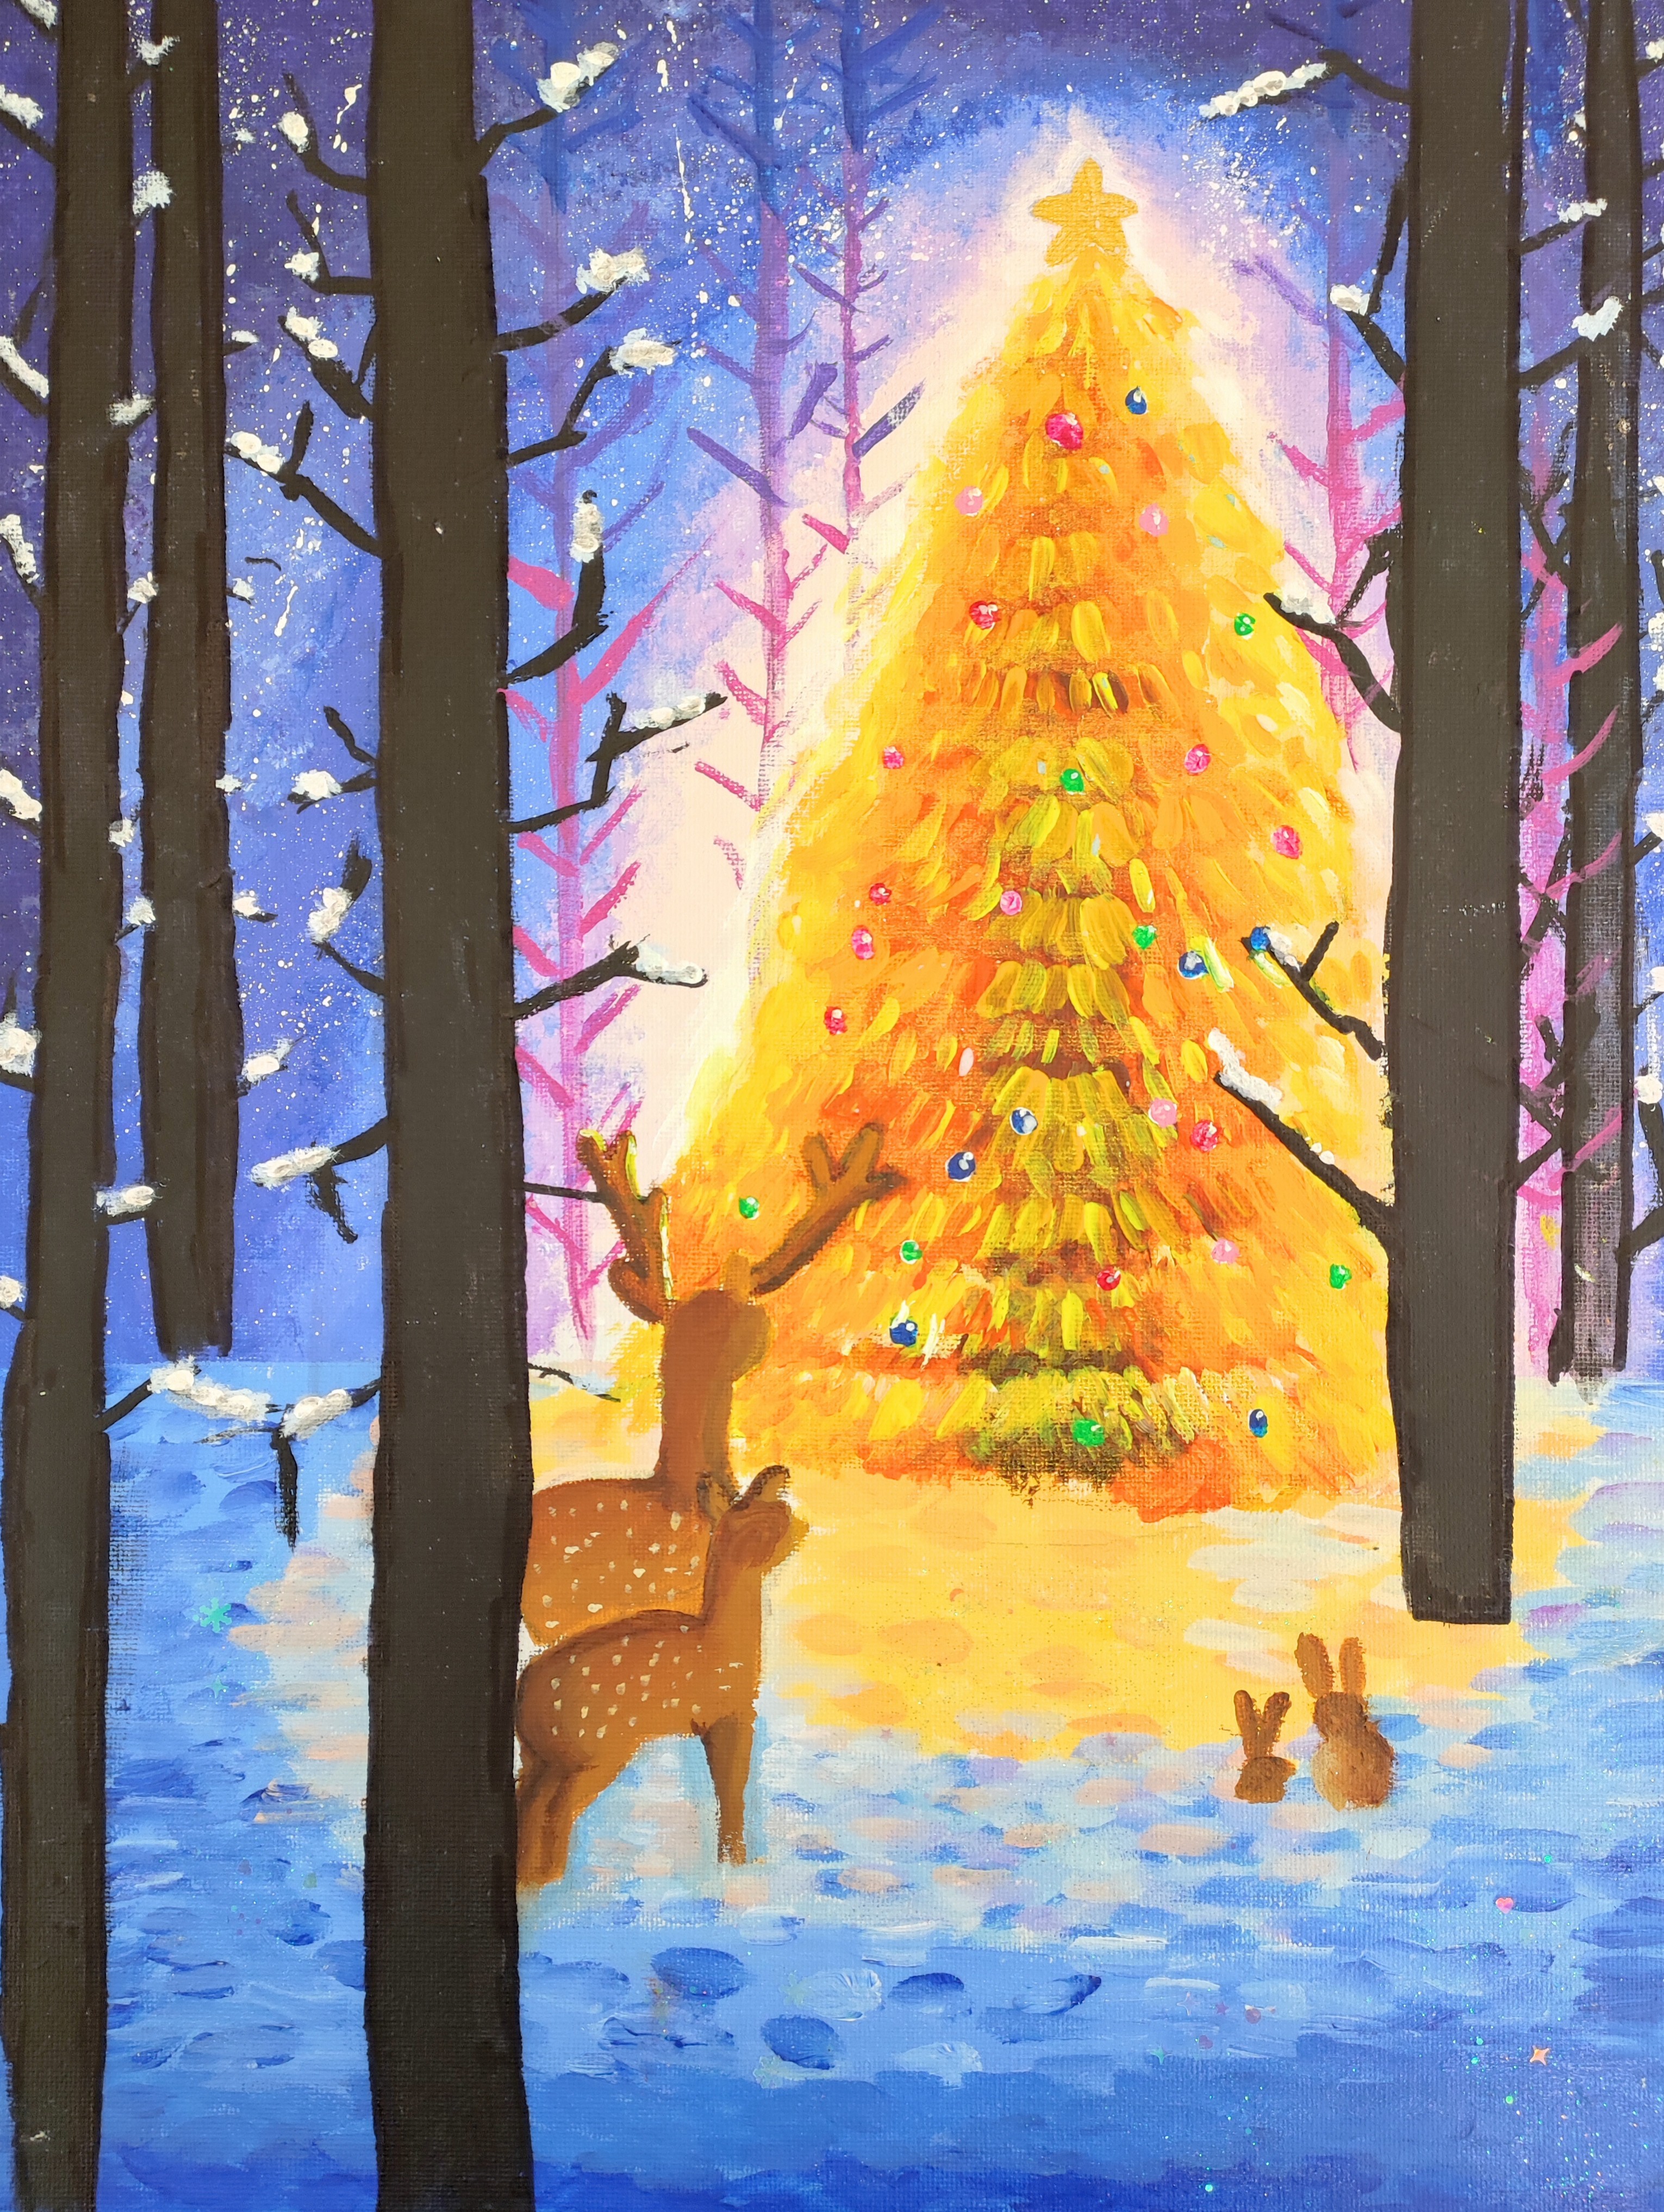 <div>繽紛聖誕-初小組-亞軍-莊澄悅</div>
<div>聖誕樹、聖空及雪地的處理很出色，聖誕樹與背景的顏色對比強烈，吸引人立刻注視著聖誕樹主體。</div>